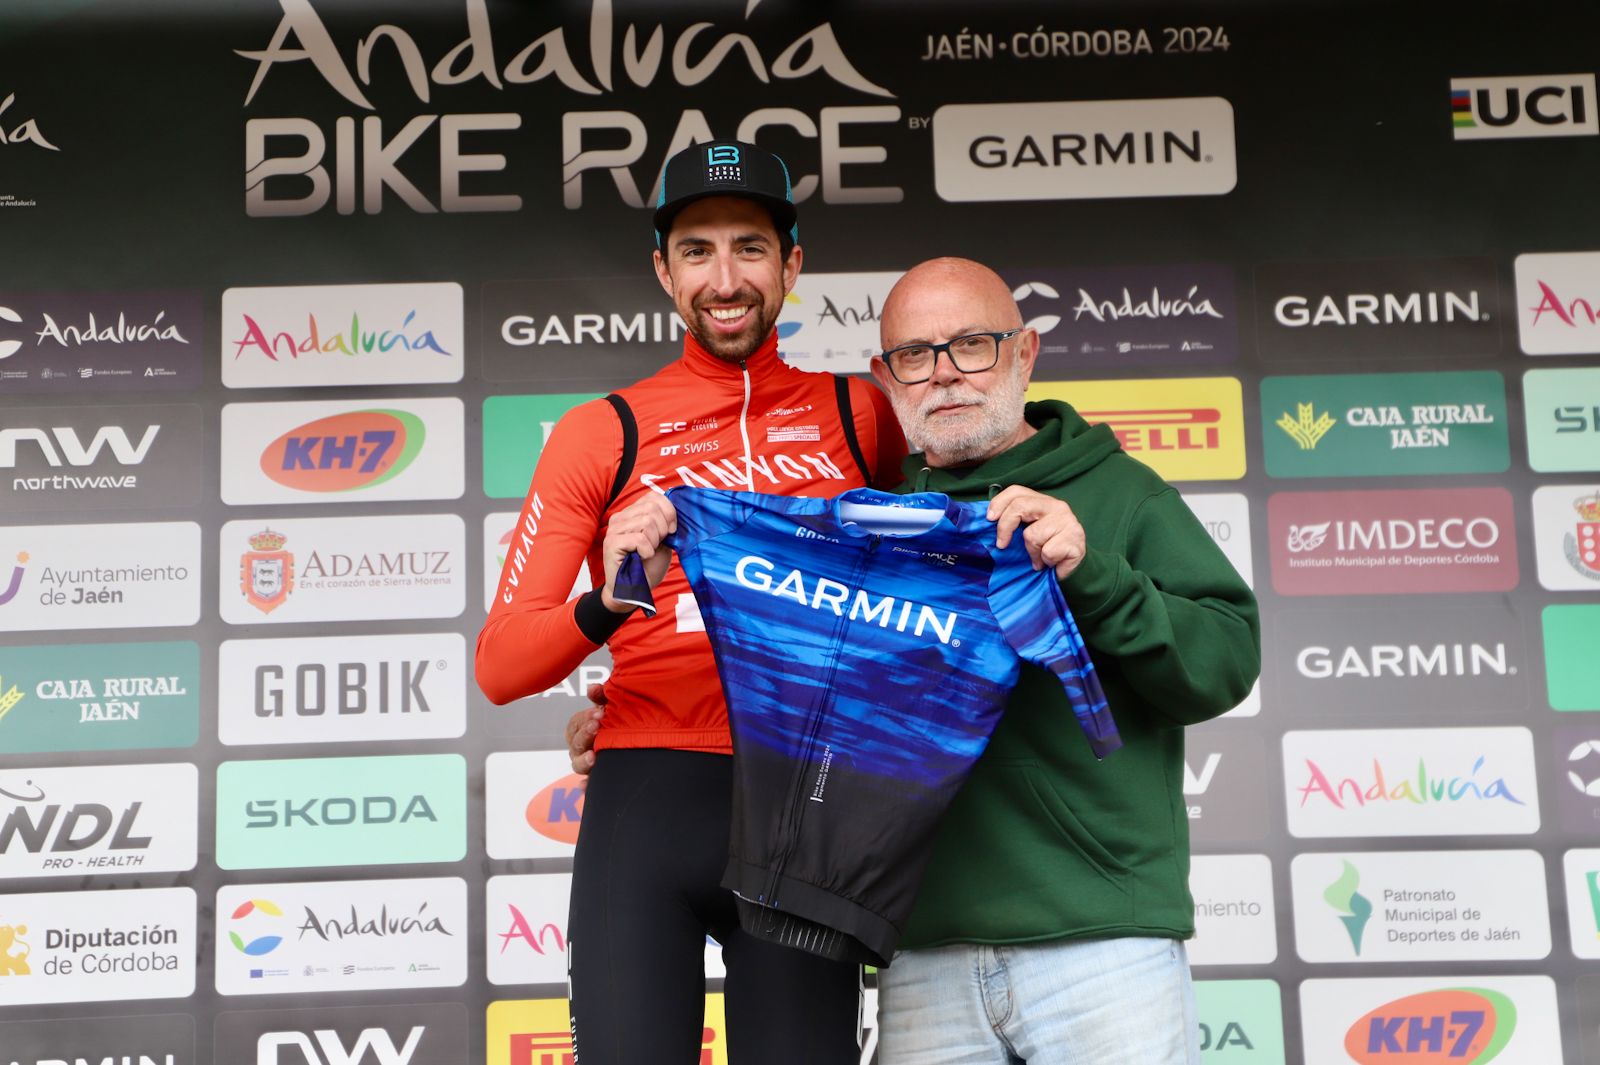 La Andalucía Bike Race y su última etapa en Córdoba, en imágenes